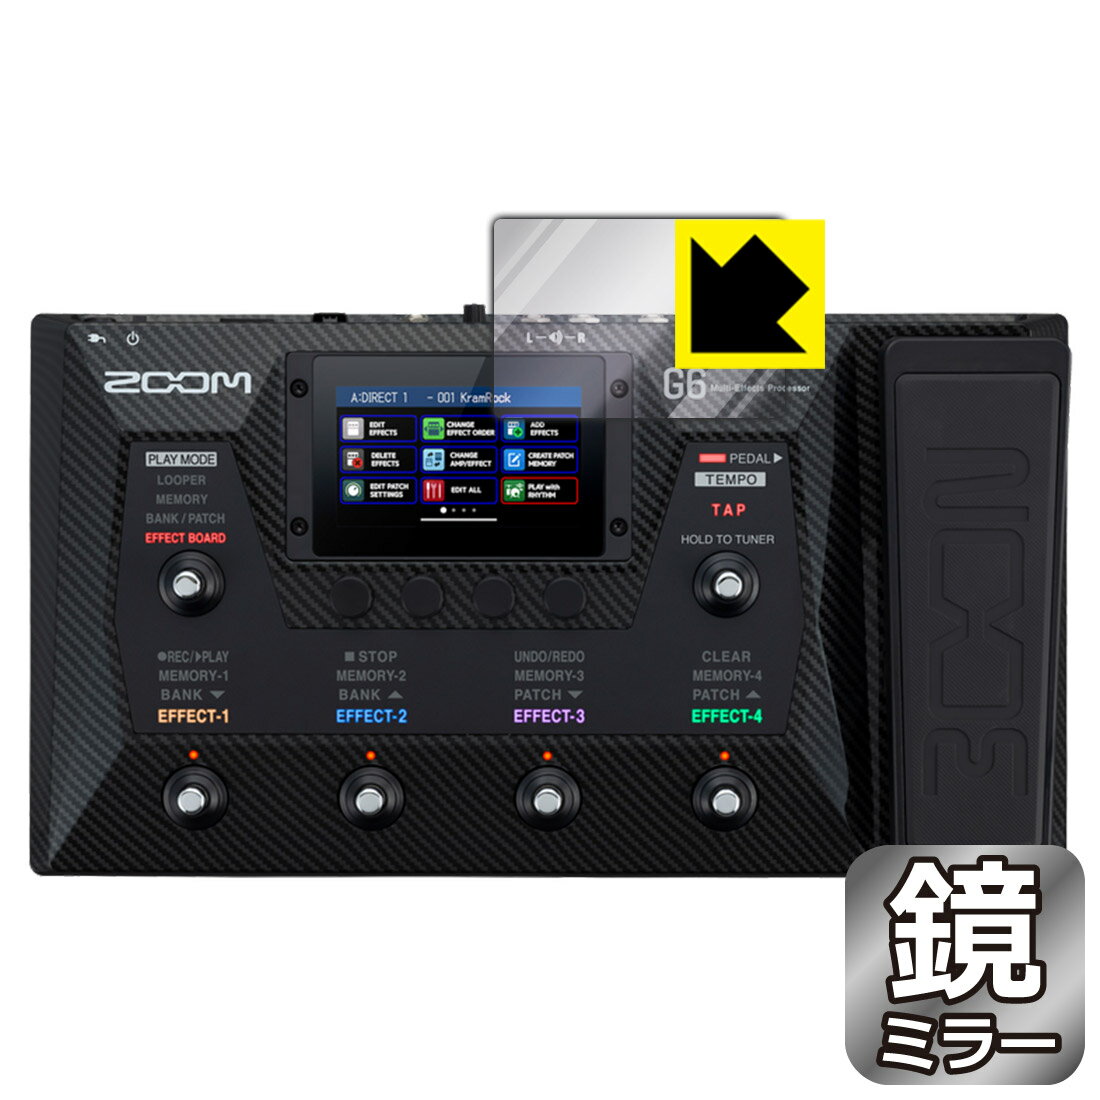 Mirror Shield 保護フィルム ZOOM G6 (タッチスクリーン用) 日本製 自社製造直販